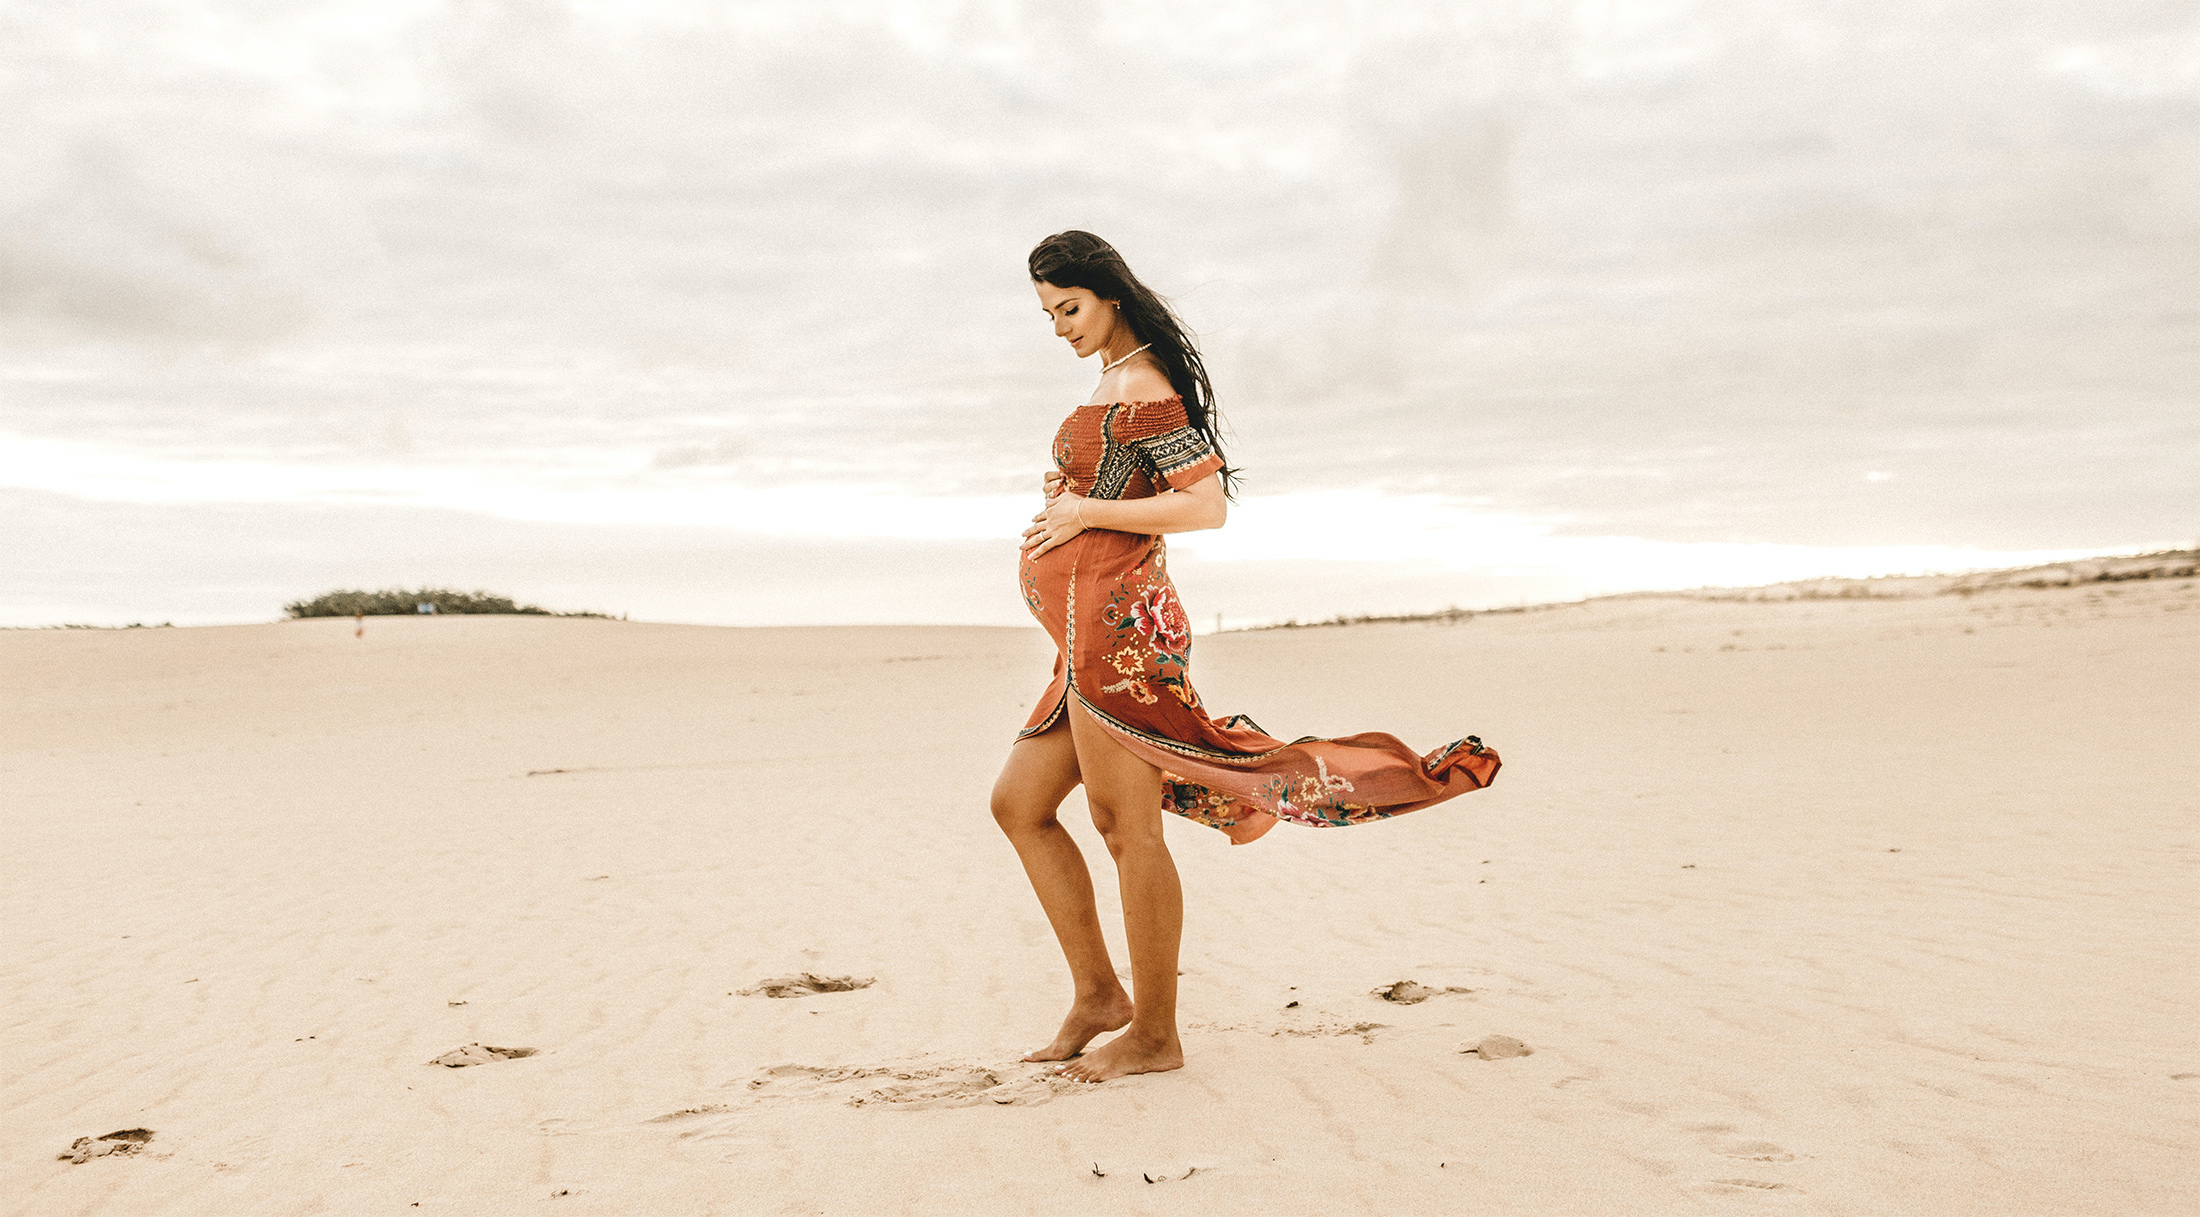 Kobieta w ciąży stoi na plaży i trzyma się za brzuch. Wiatr rozwiewa jej suknię